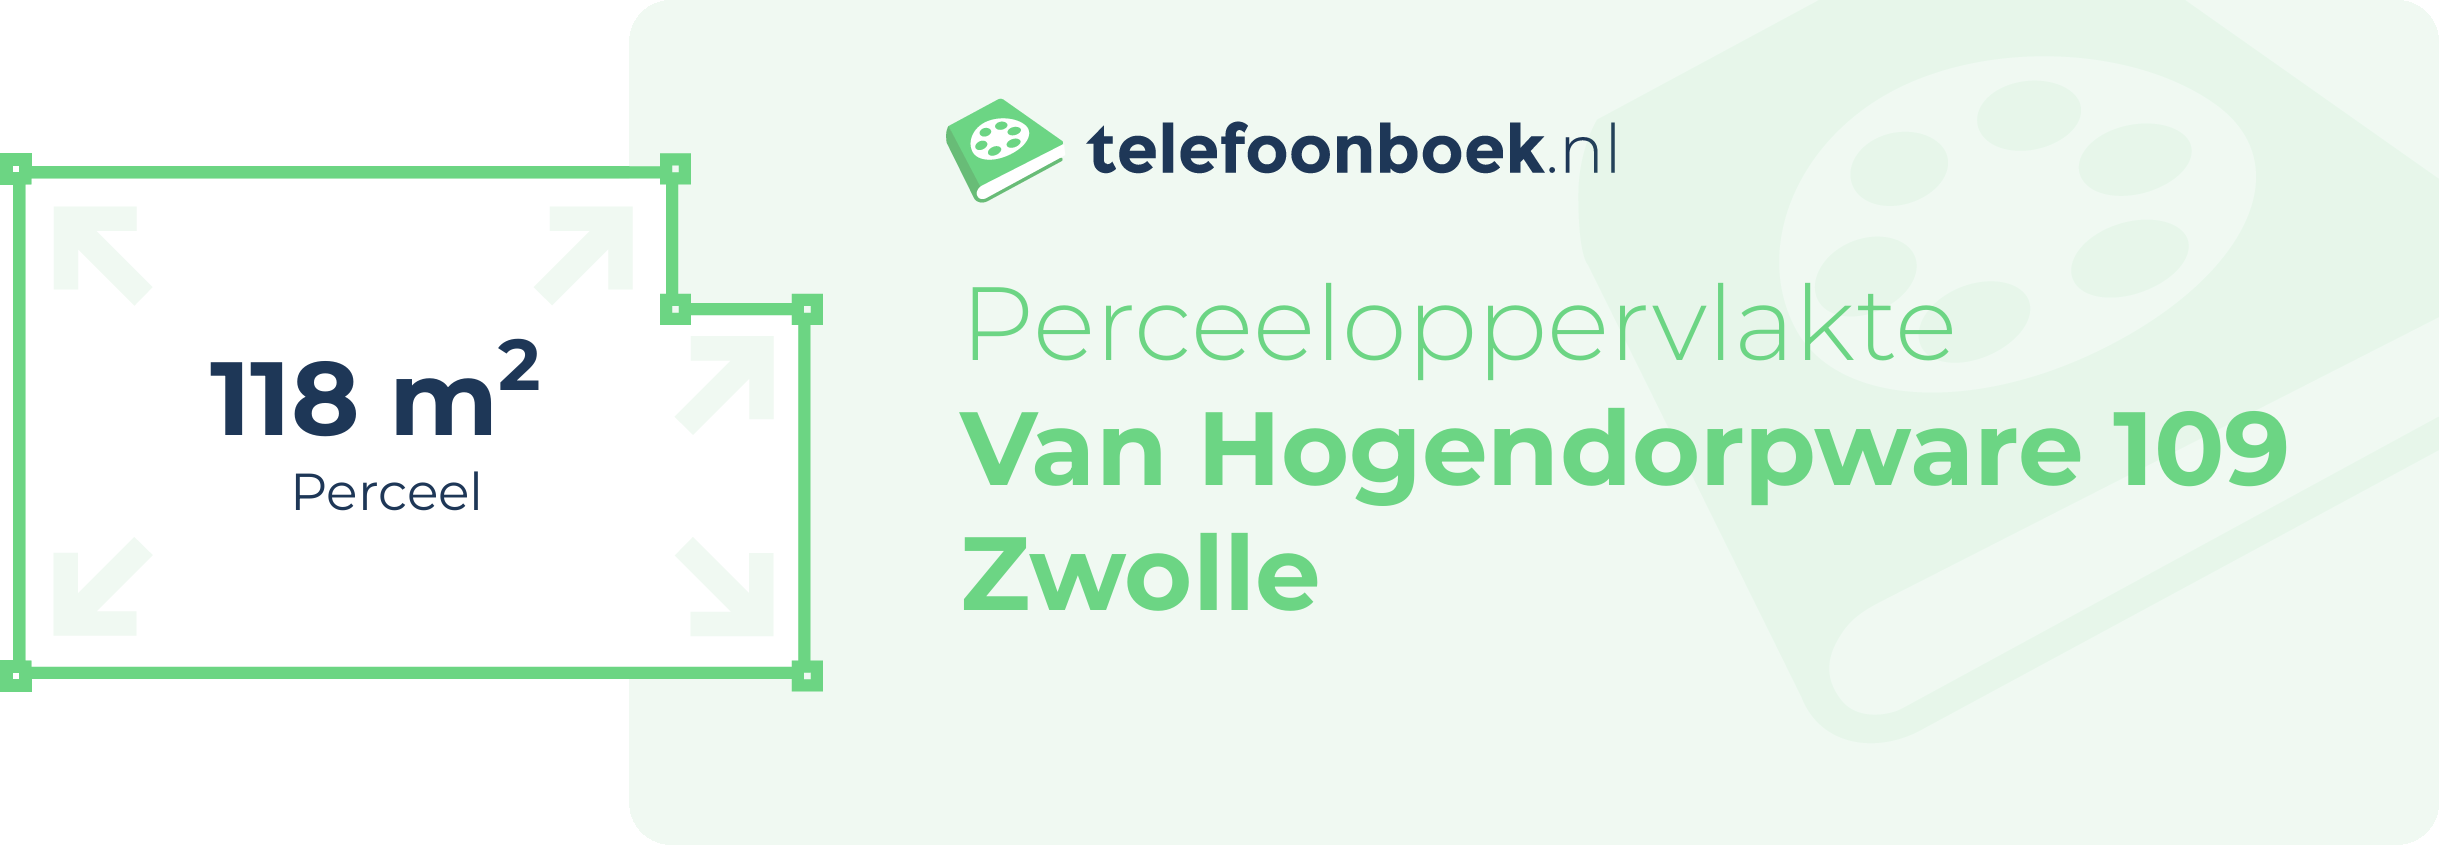 Perceeloppervlakte Van Hogendorpware 109 Zwolle